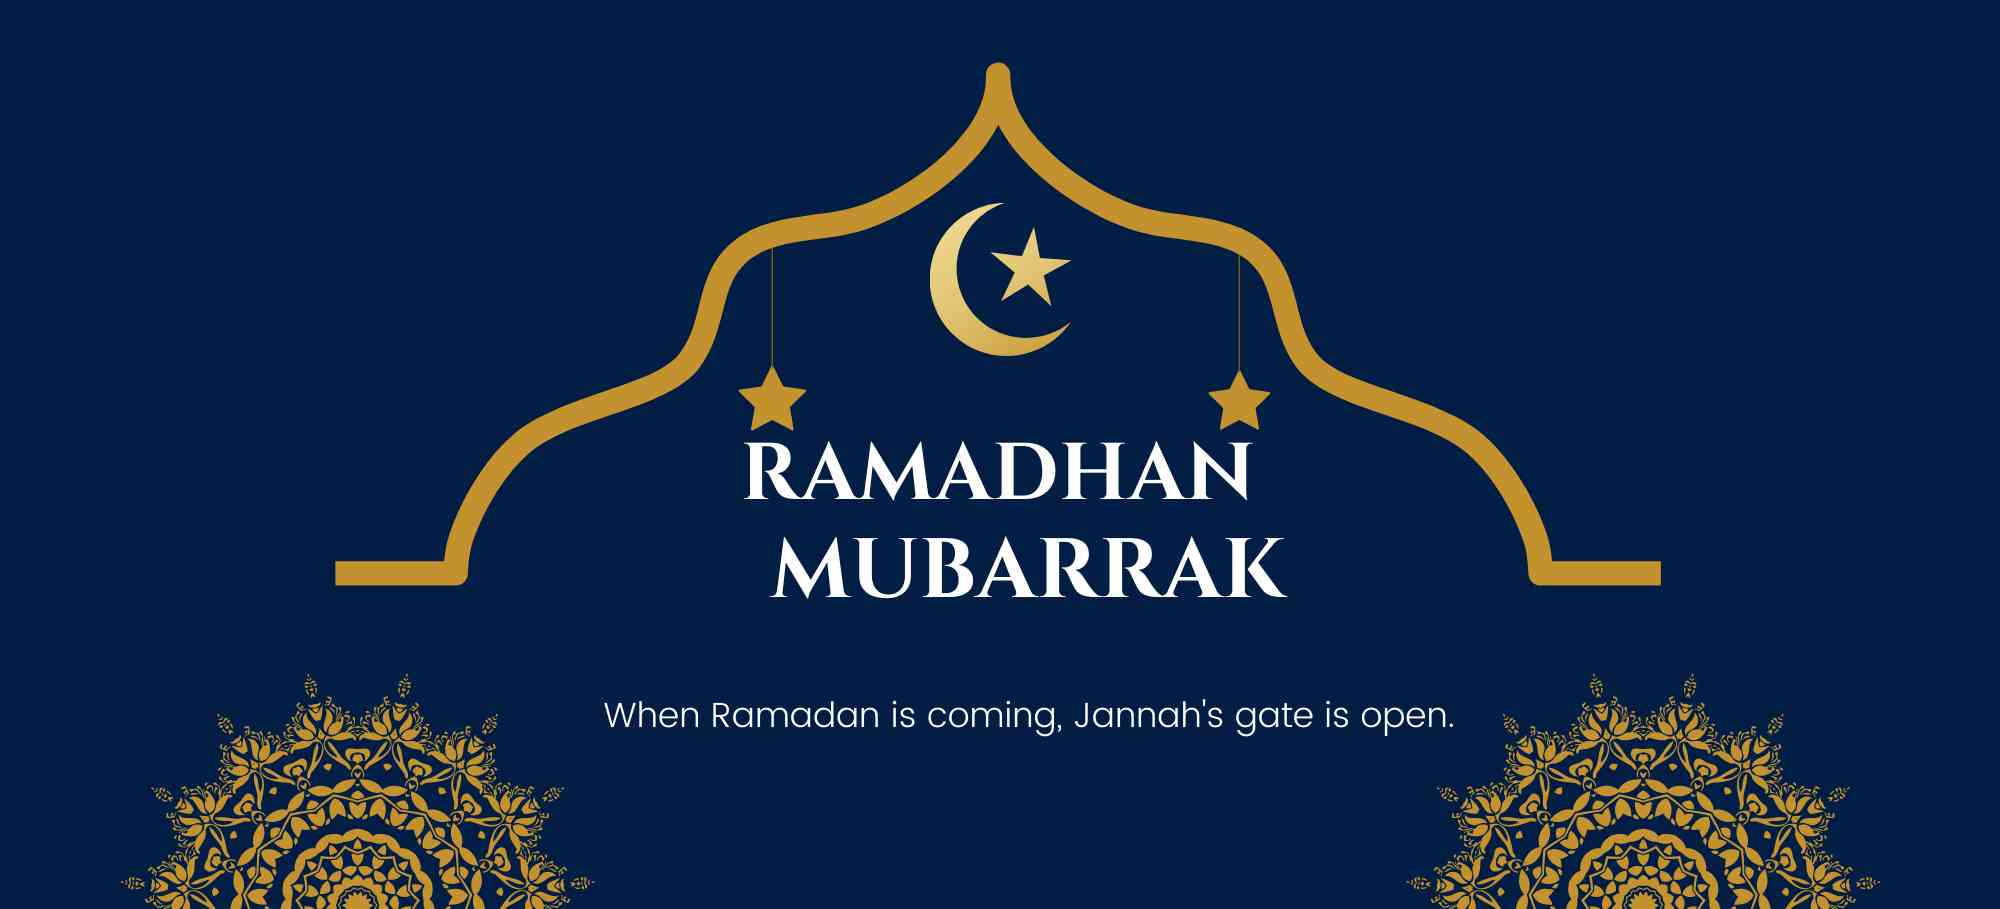 Memaknai Ramadan sebagai Bulan Penuh Berkah